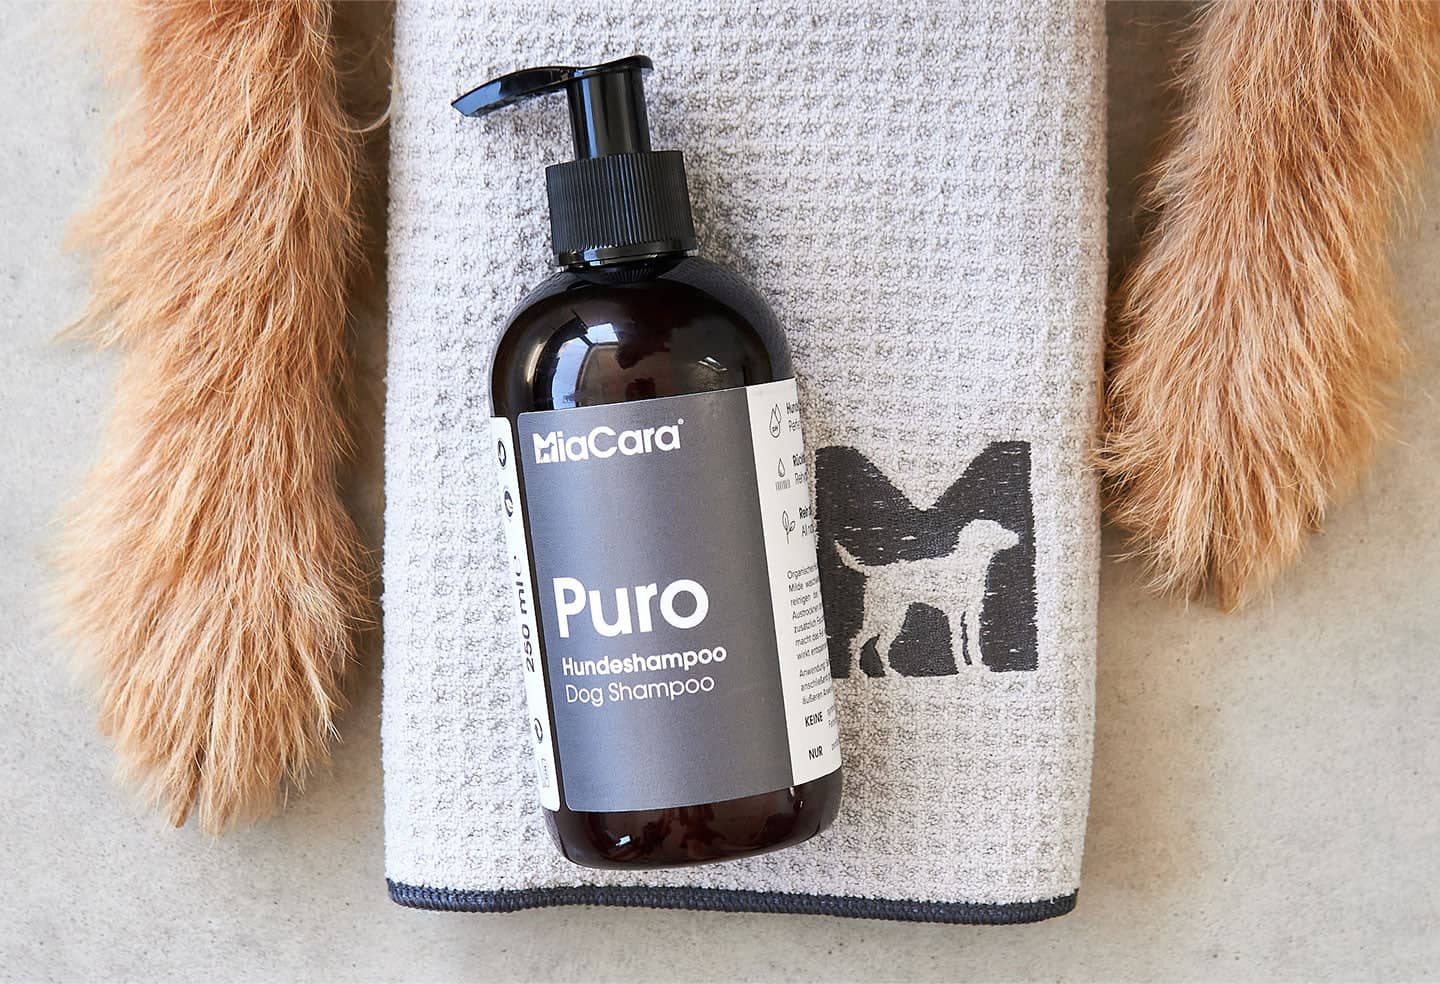 Hydrating dog shampoo with aloe vera and jojoba oil